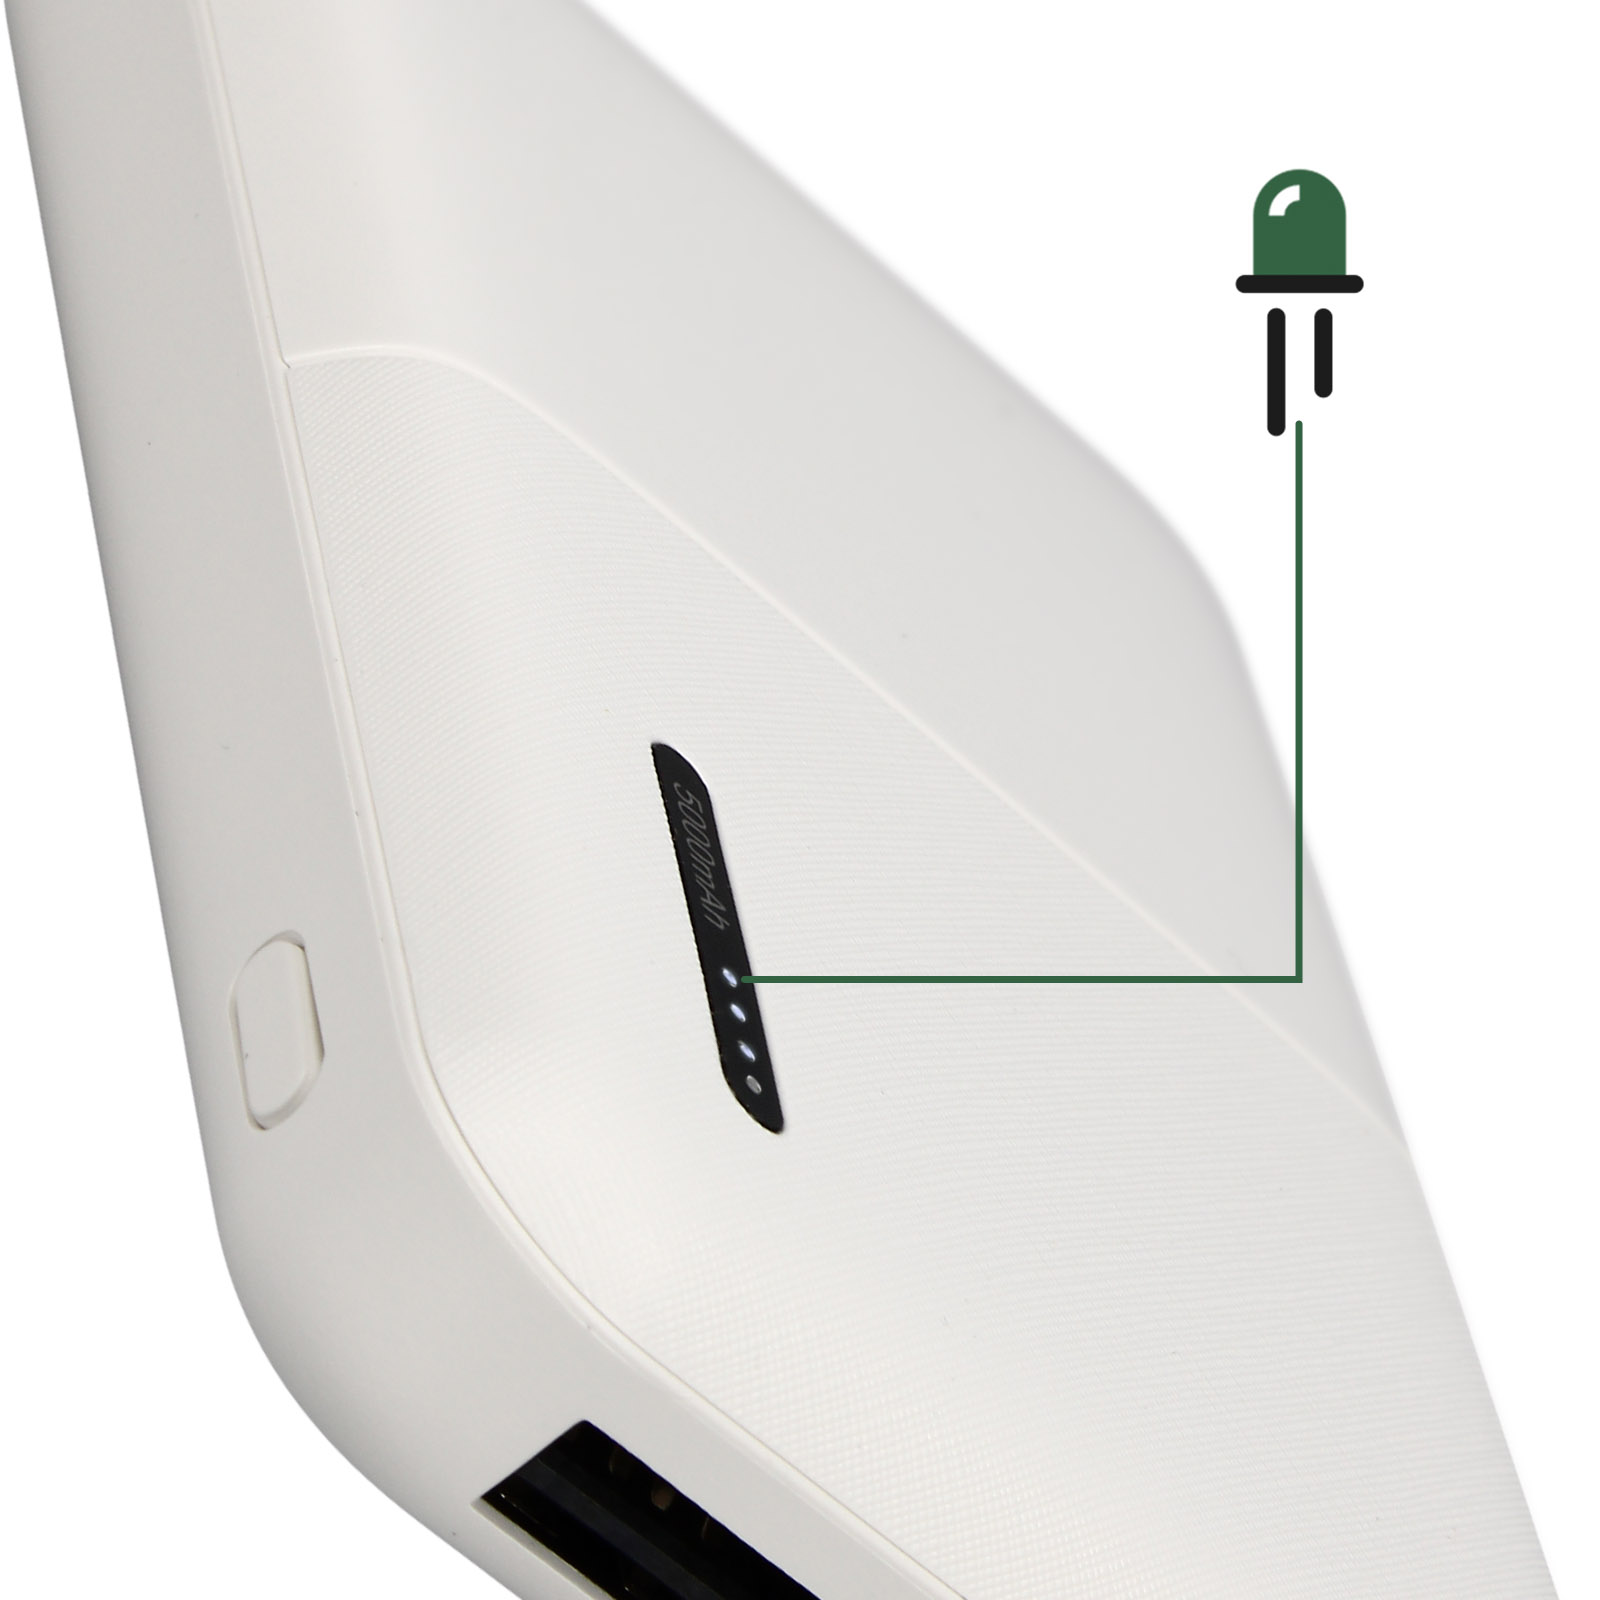 Cargador Externo 5000mAh con 2x USB Recarga Rápida, Diseño compacto, Akashi  – Blanco - Spain